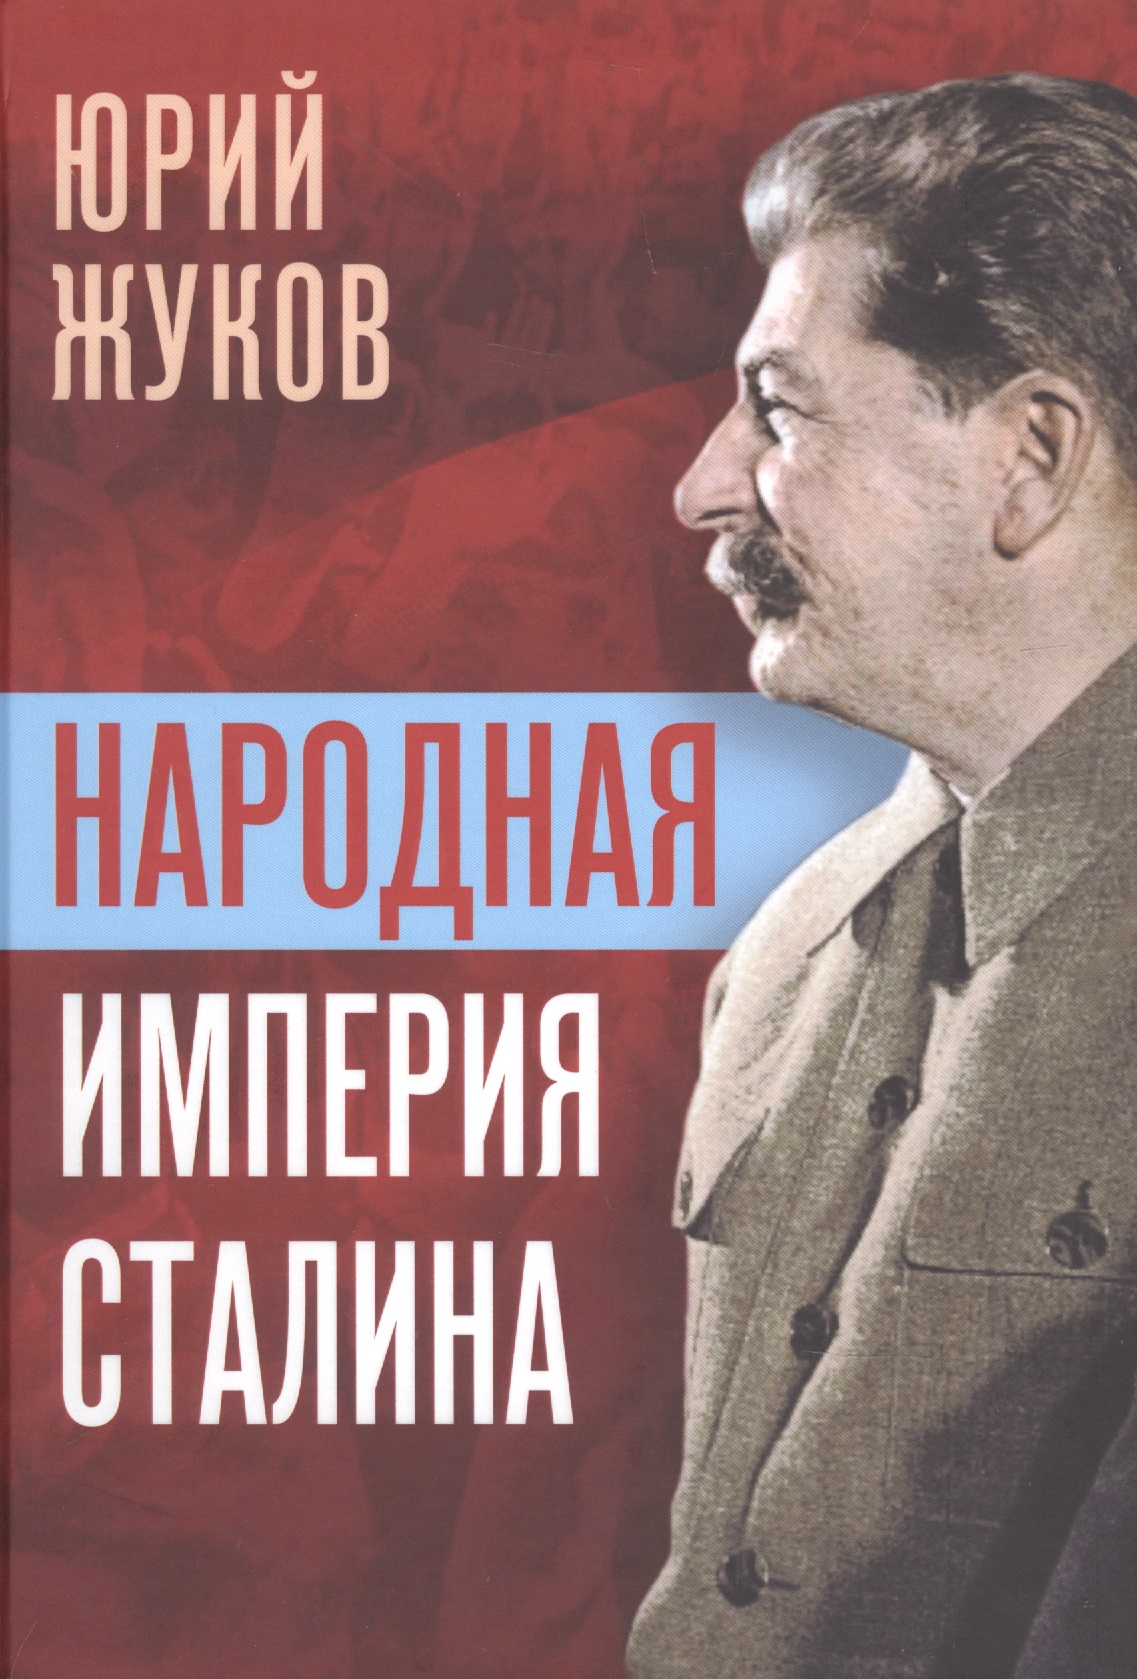 Жуков Юрий Николаевич Народная империя Сталина